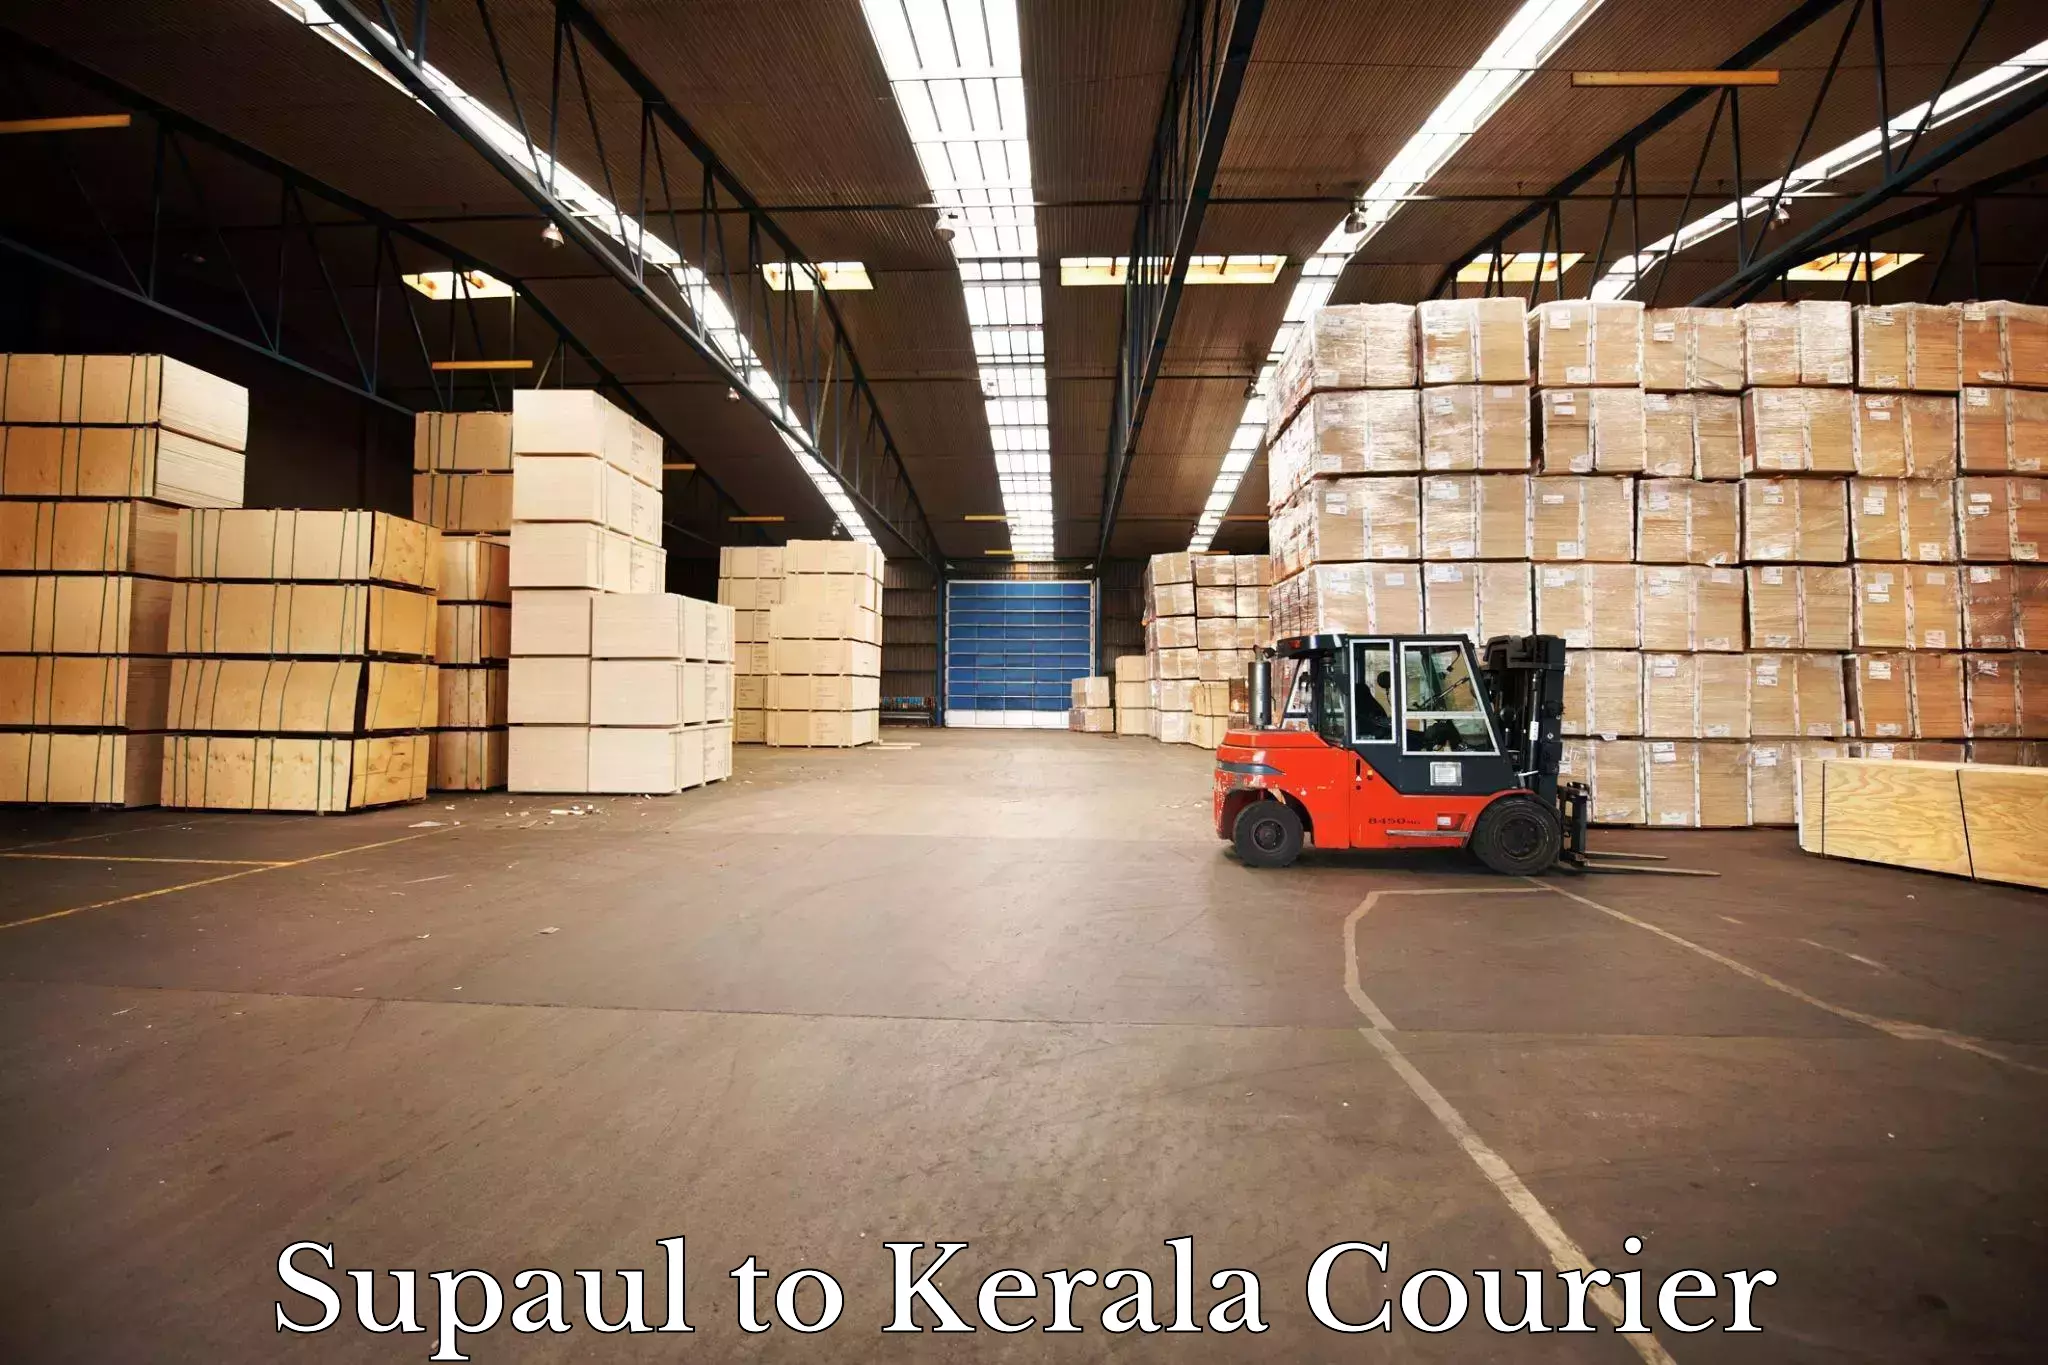 Express logistics Supaul to Kerala